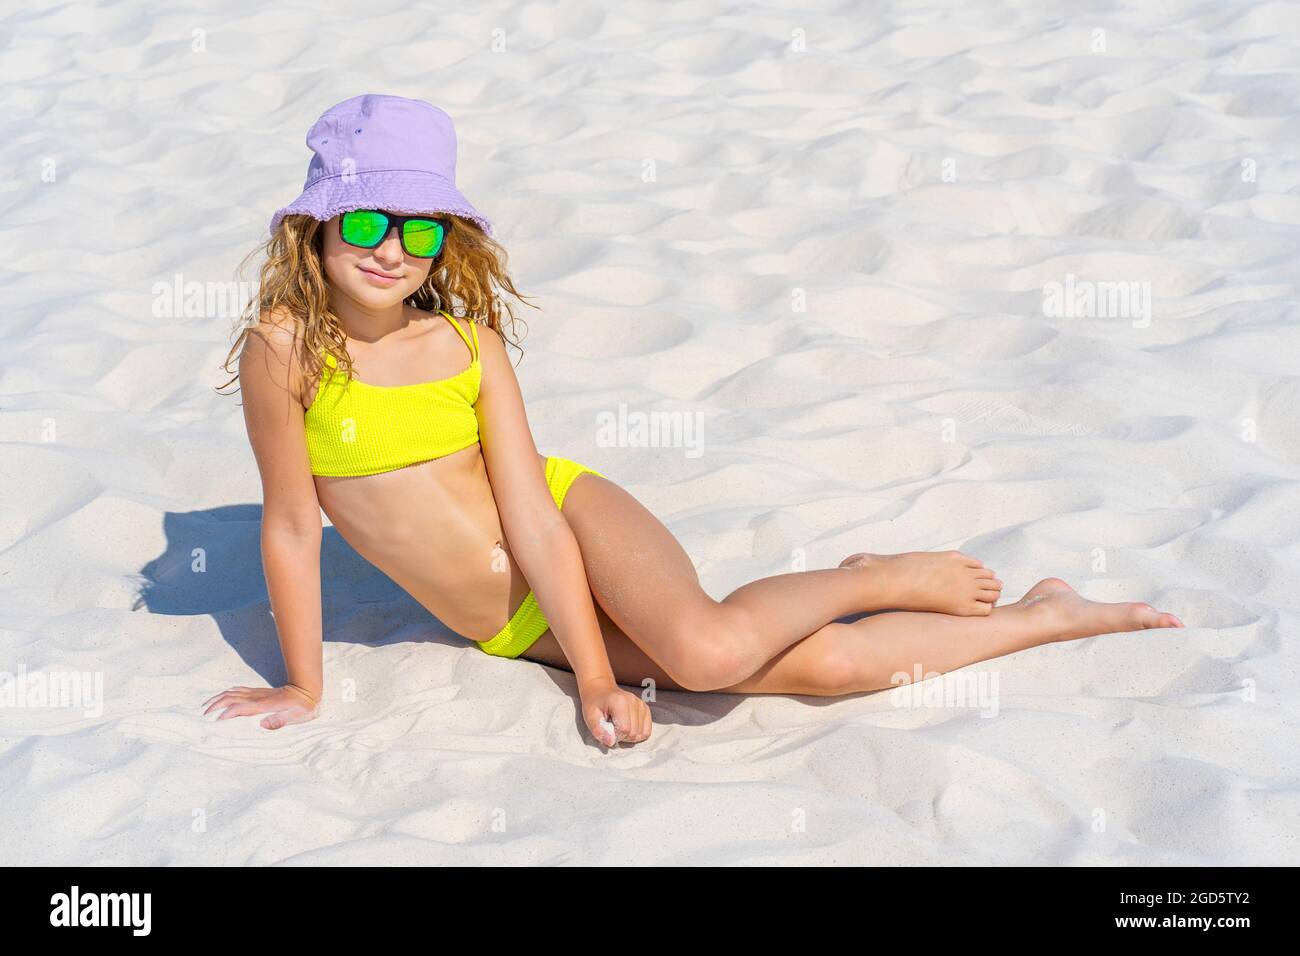 Ritratto di una giovane bella modella ragazza con cappello e occhiali da  sole in posa sulla spiaggia. Indossa un costume da bagno bikini giallo  brillante. Giorno d'estate, sabbia bianca. Foto di alta